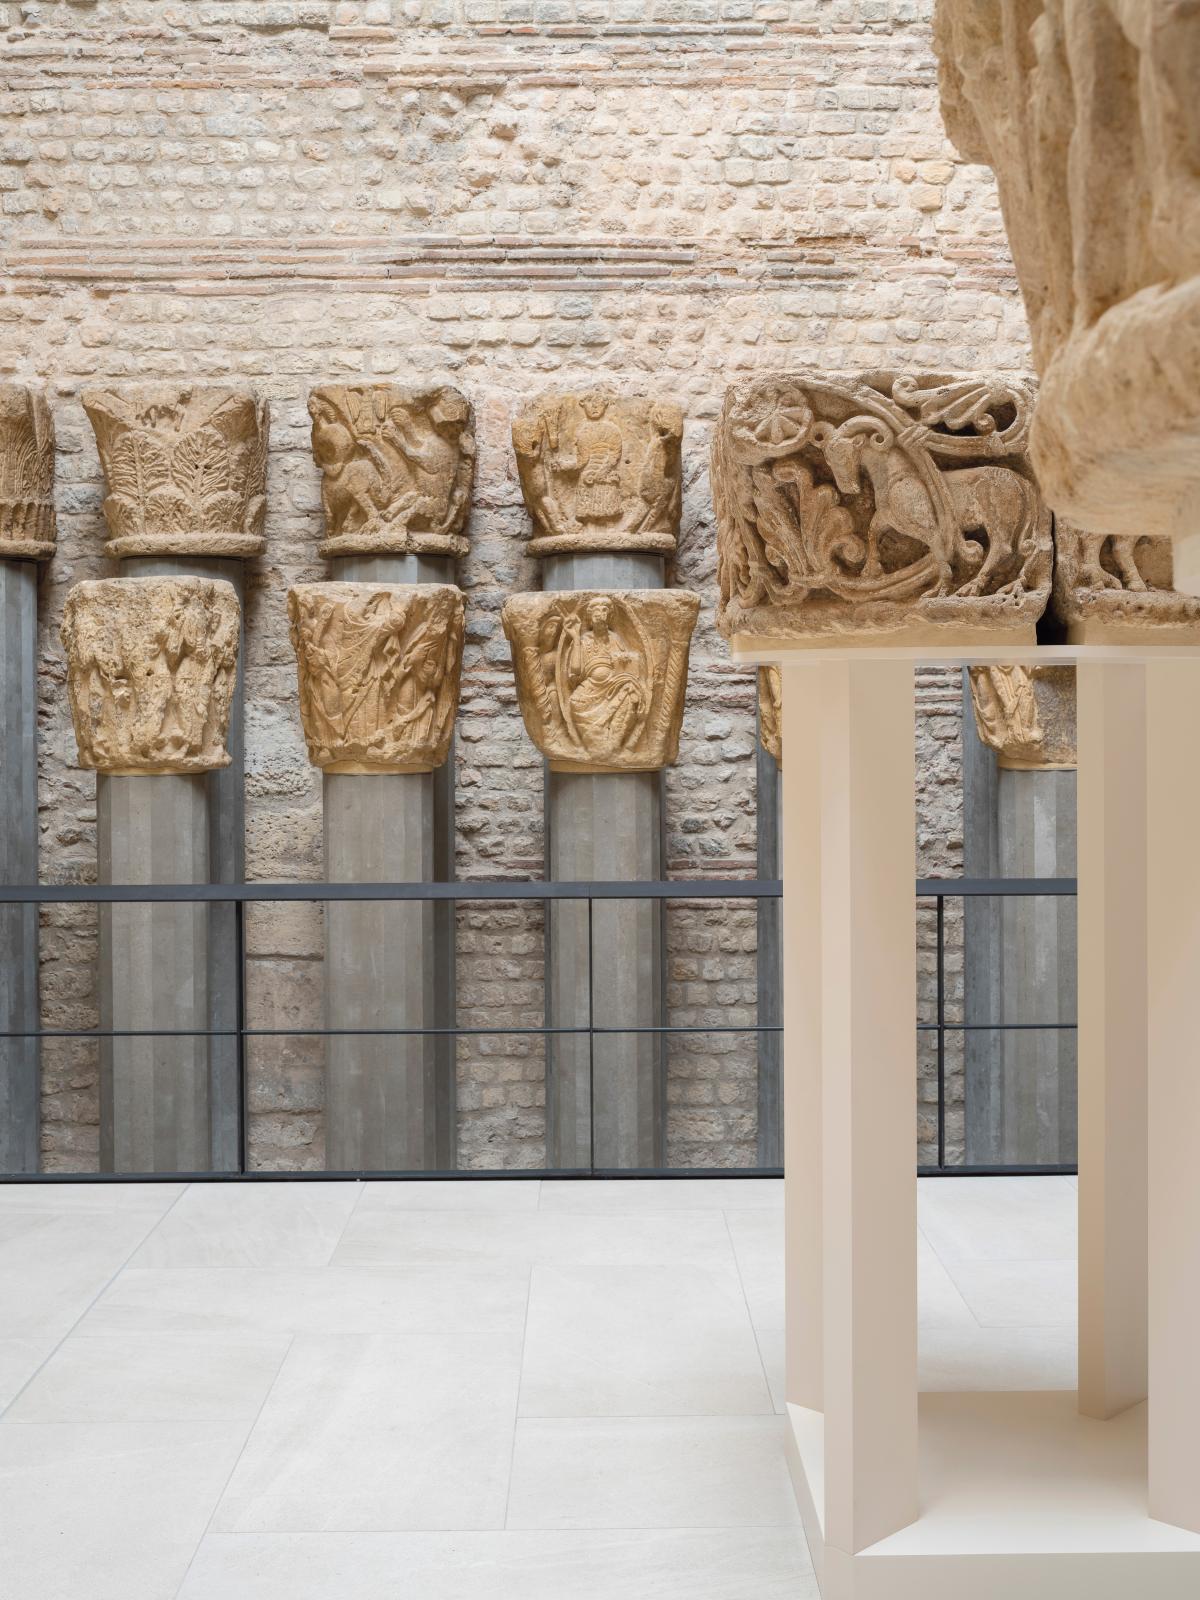 Salle 3, entre art roman et premier art gothique, musée de Cluny - musée national du Moyen Âge. © Alexis Paoli, OPPIC 